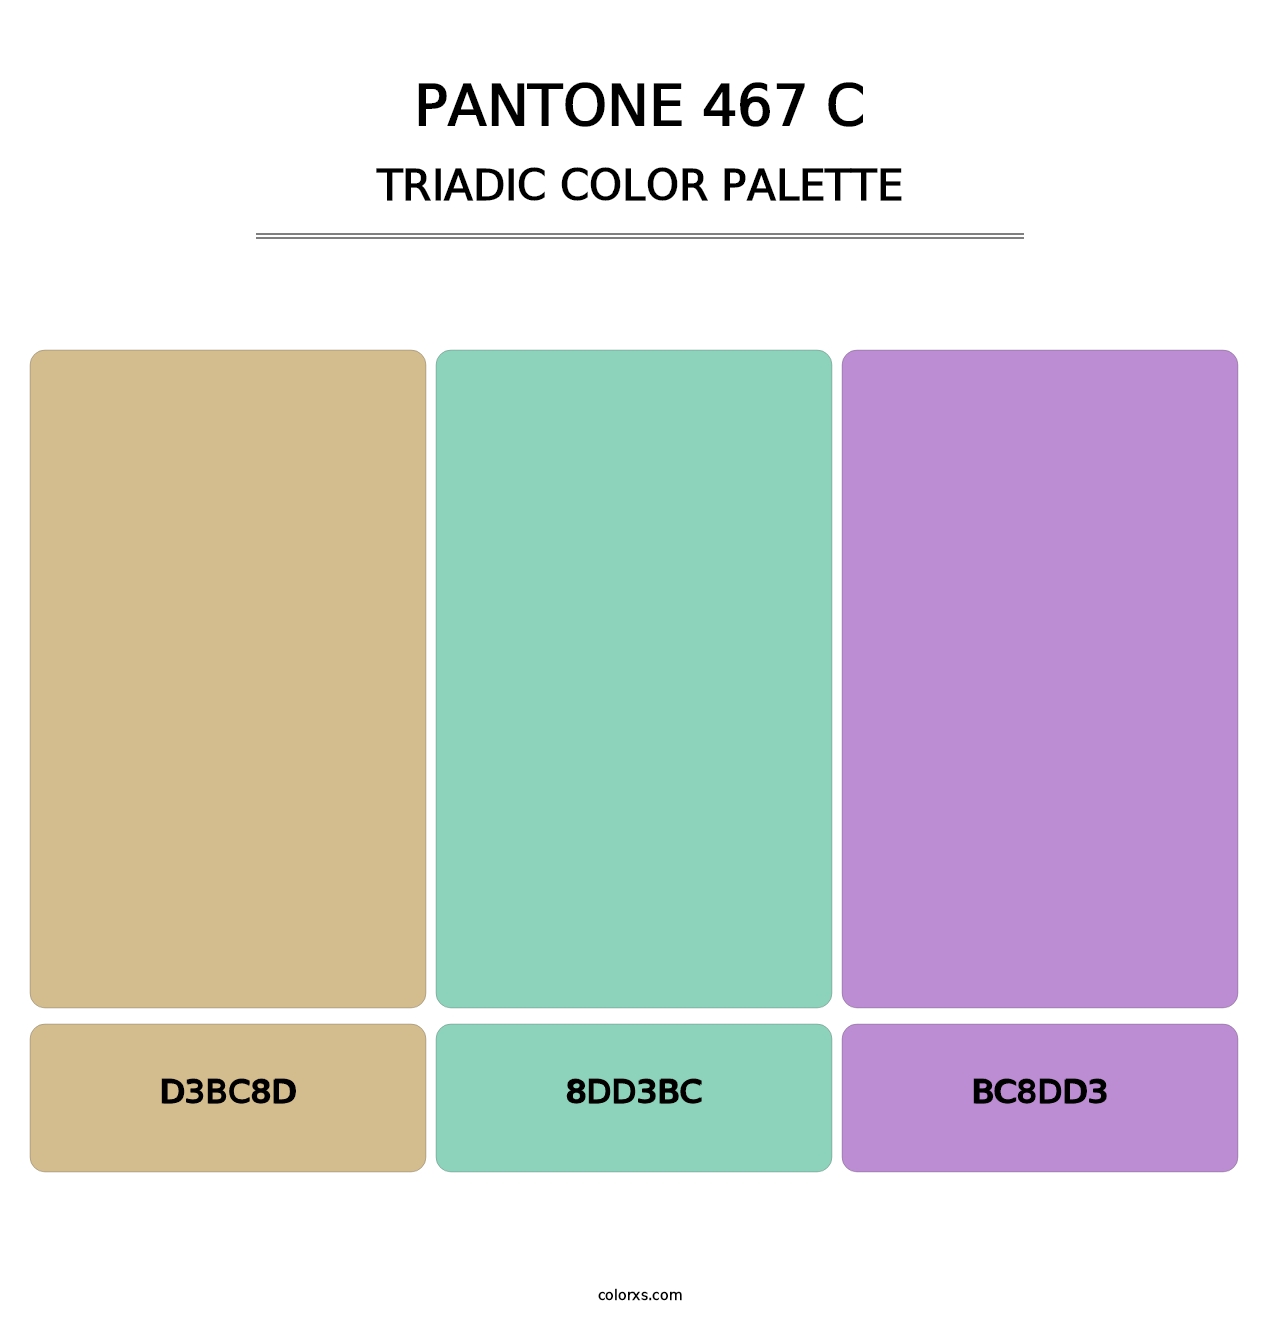 PANTONE 467 C - Triadic Color Palette